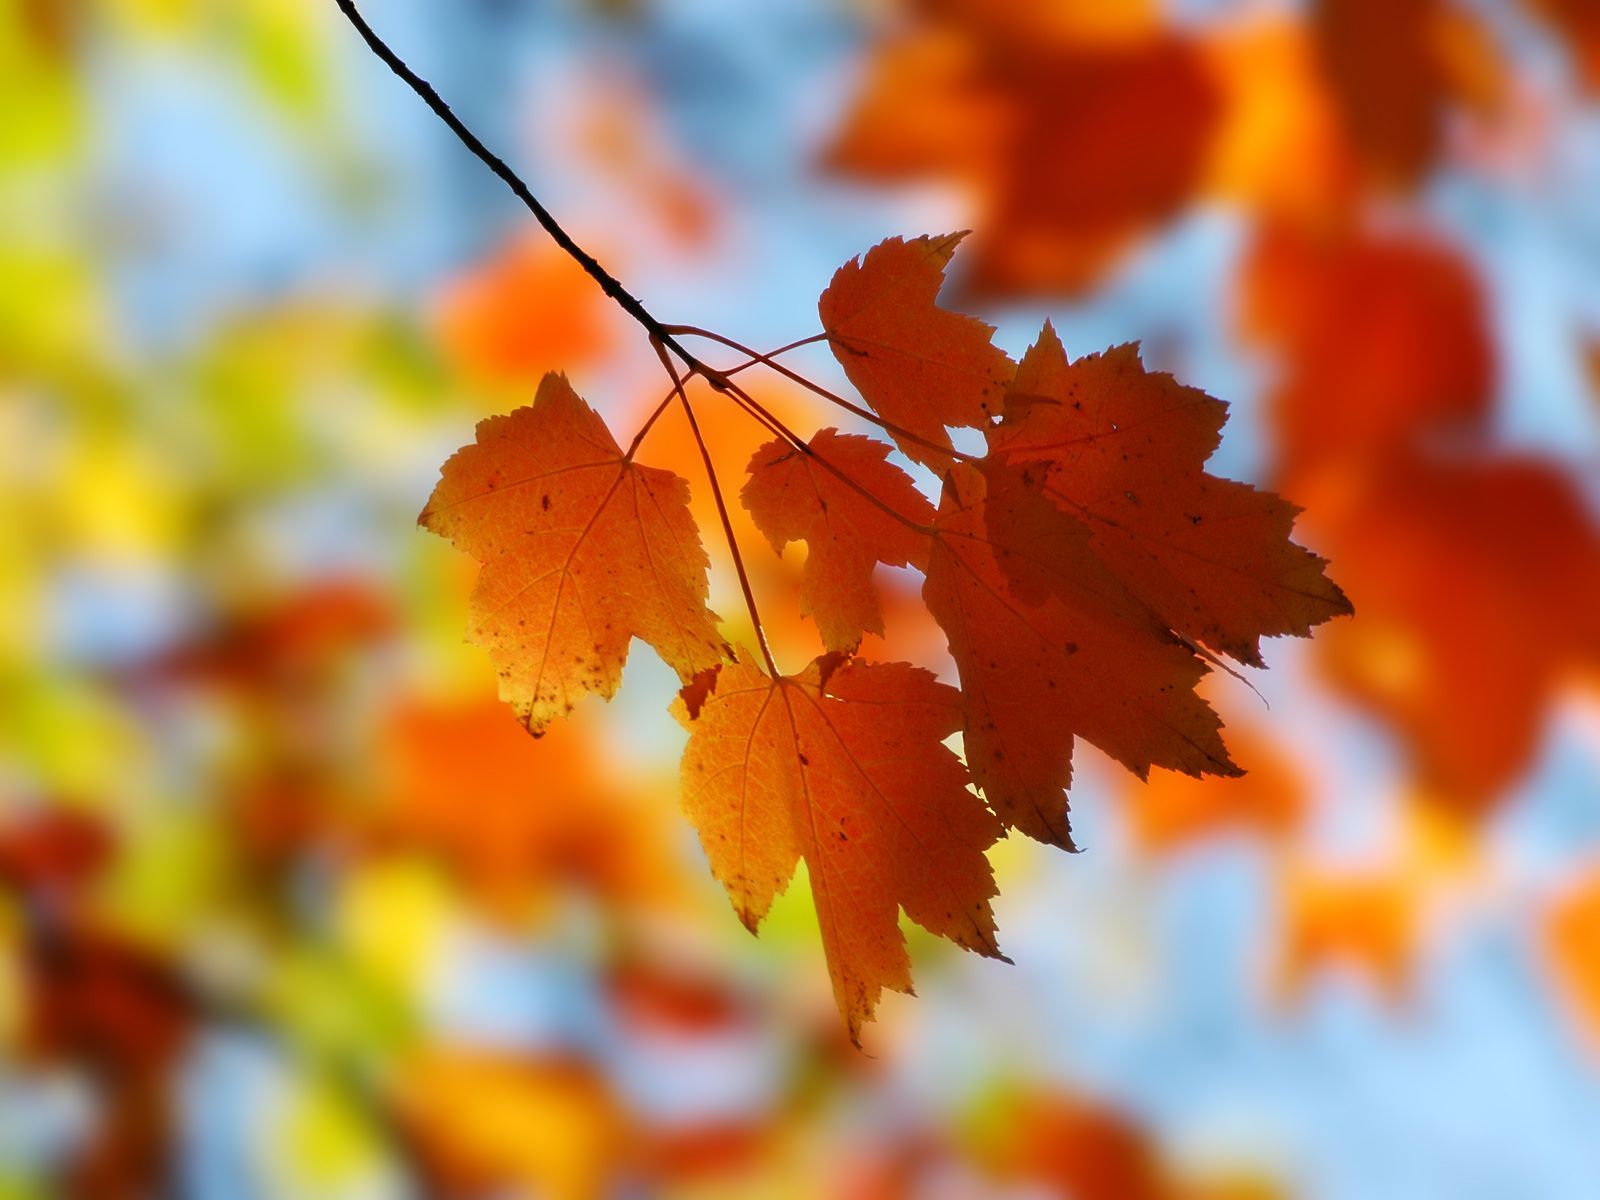 beautiful nature autumn desktop wallpapers 1080p | Daily pics ...